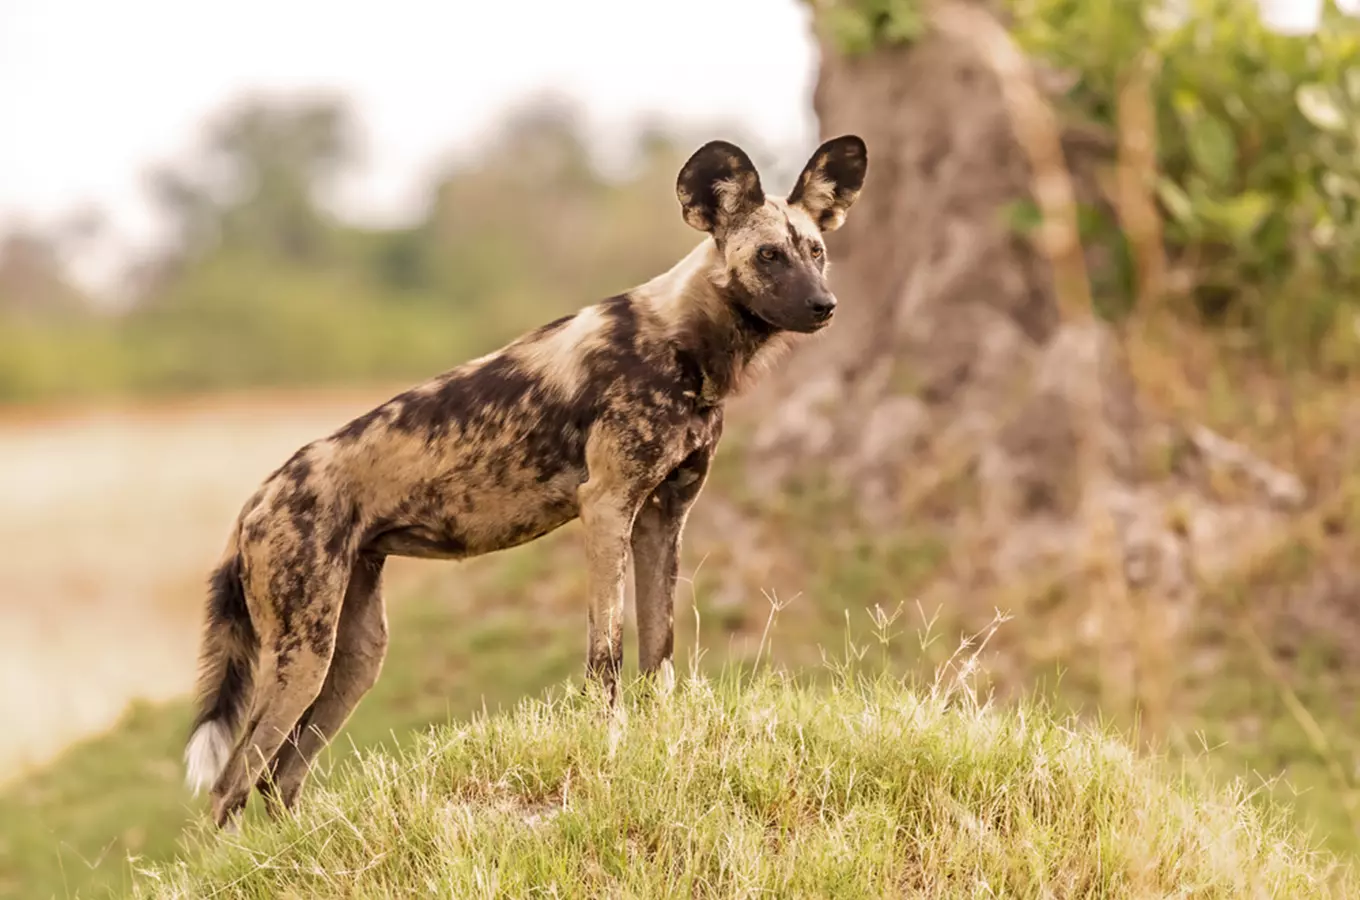 Ve Dvoře Králové se poběží Safari běh na záchranu psů hyenových 